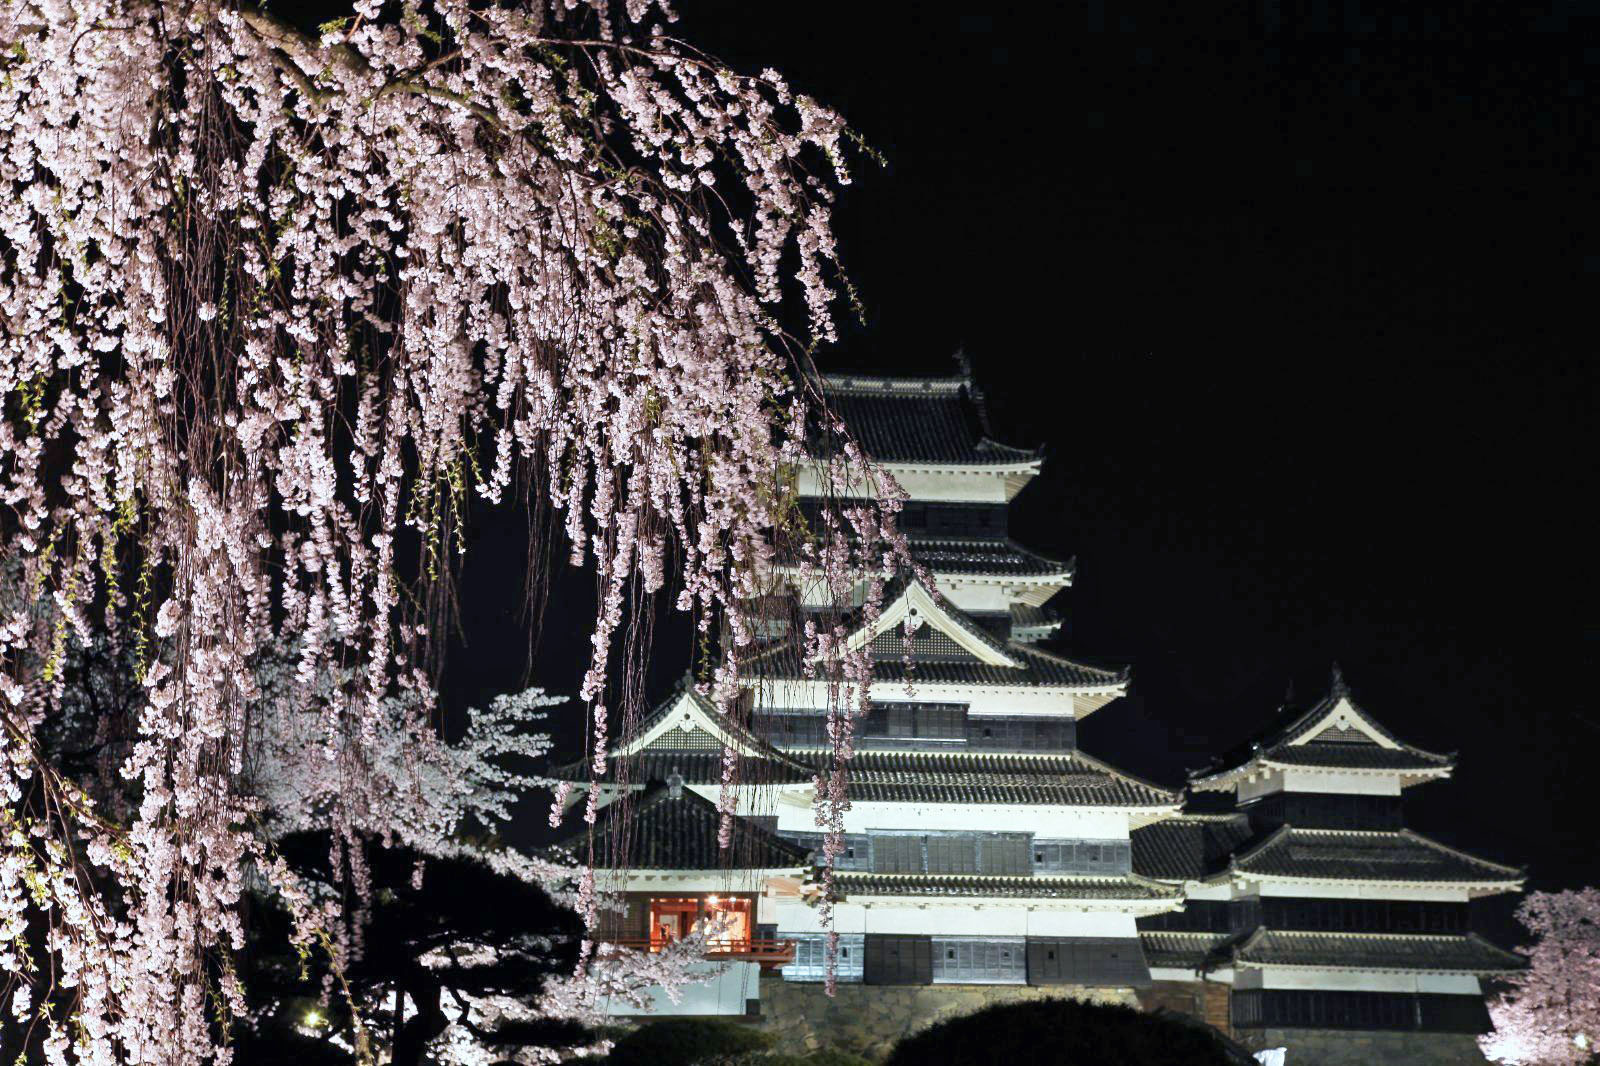 夜桜を見に行こう！国宝にして名城・松本城で美しい夜の桜を堪能する